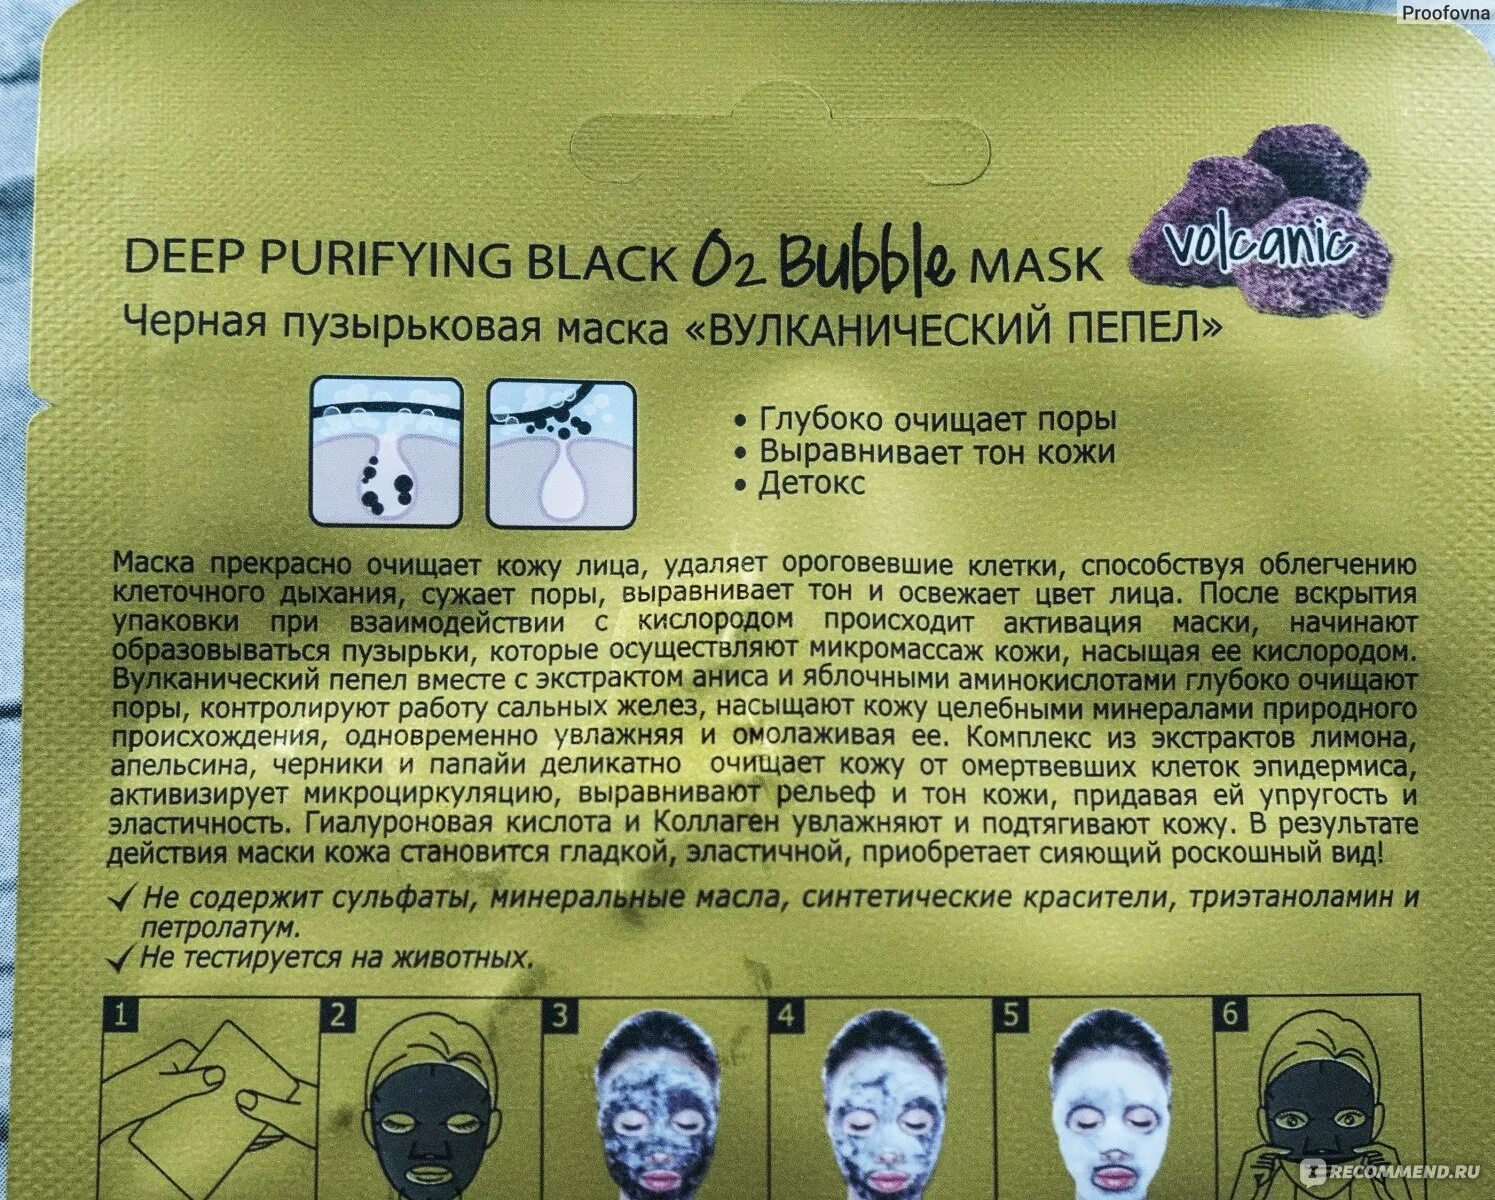 В каком зале проходит маска. Скинлайт маска для лица. Черная пузырьковая маска вулканический пепел. Фани Органик маска для лицаскинлайт маска черная пухырьковая. El'Skin маски для лица.